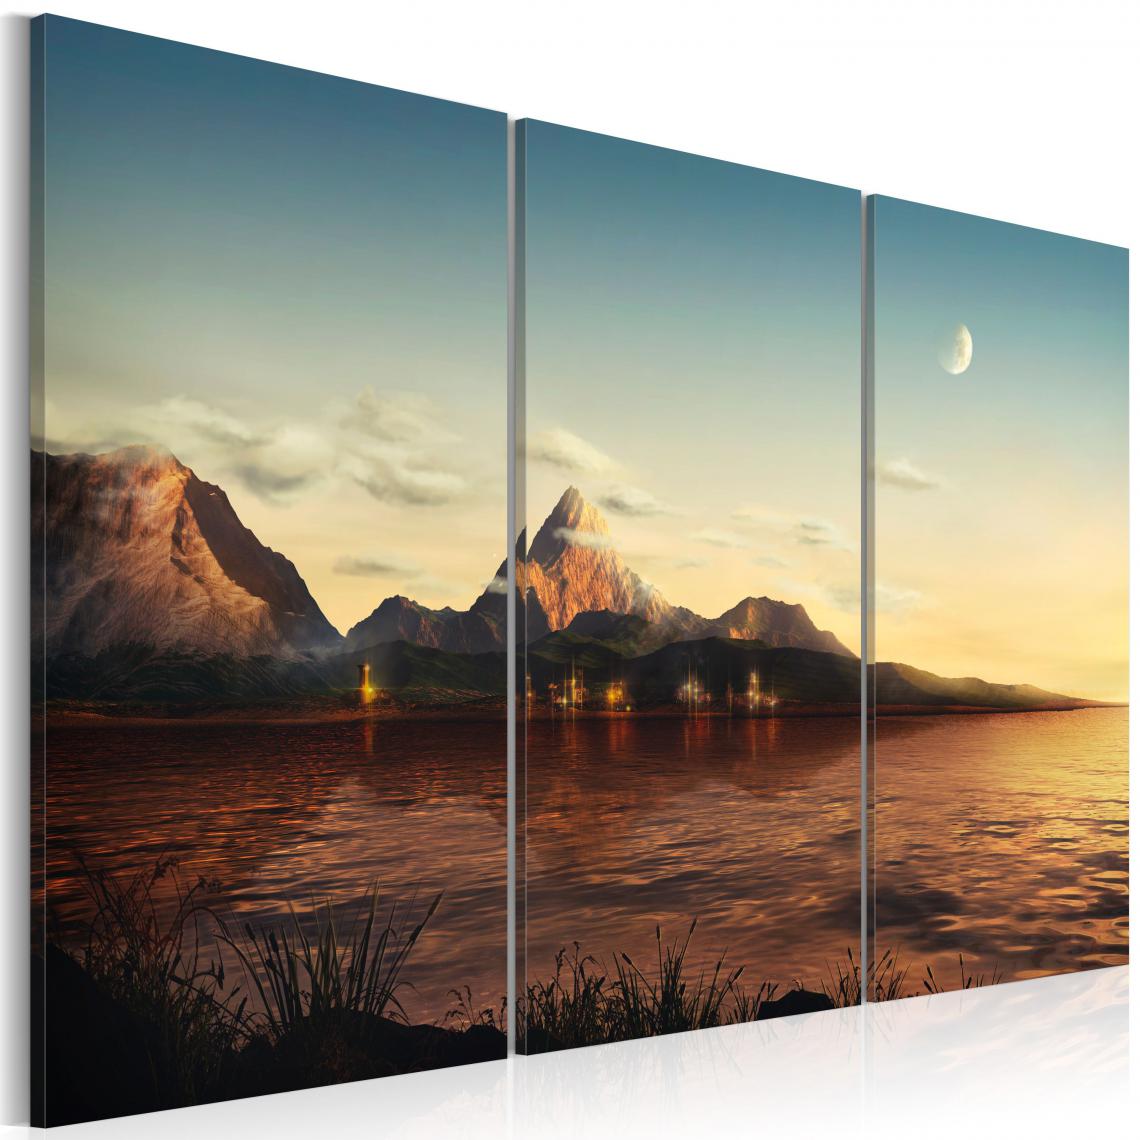 Decoshop26 - Tableau sur toile en 3 panneaux décoration murale image imprimée cadre en bois à suspendre Soirée chaude dans les montagnes 90x60 cm 11_0006656 - Tableaux, peintures